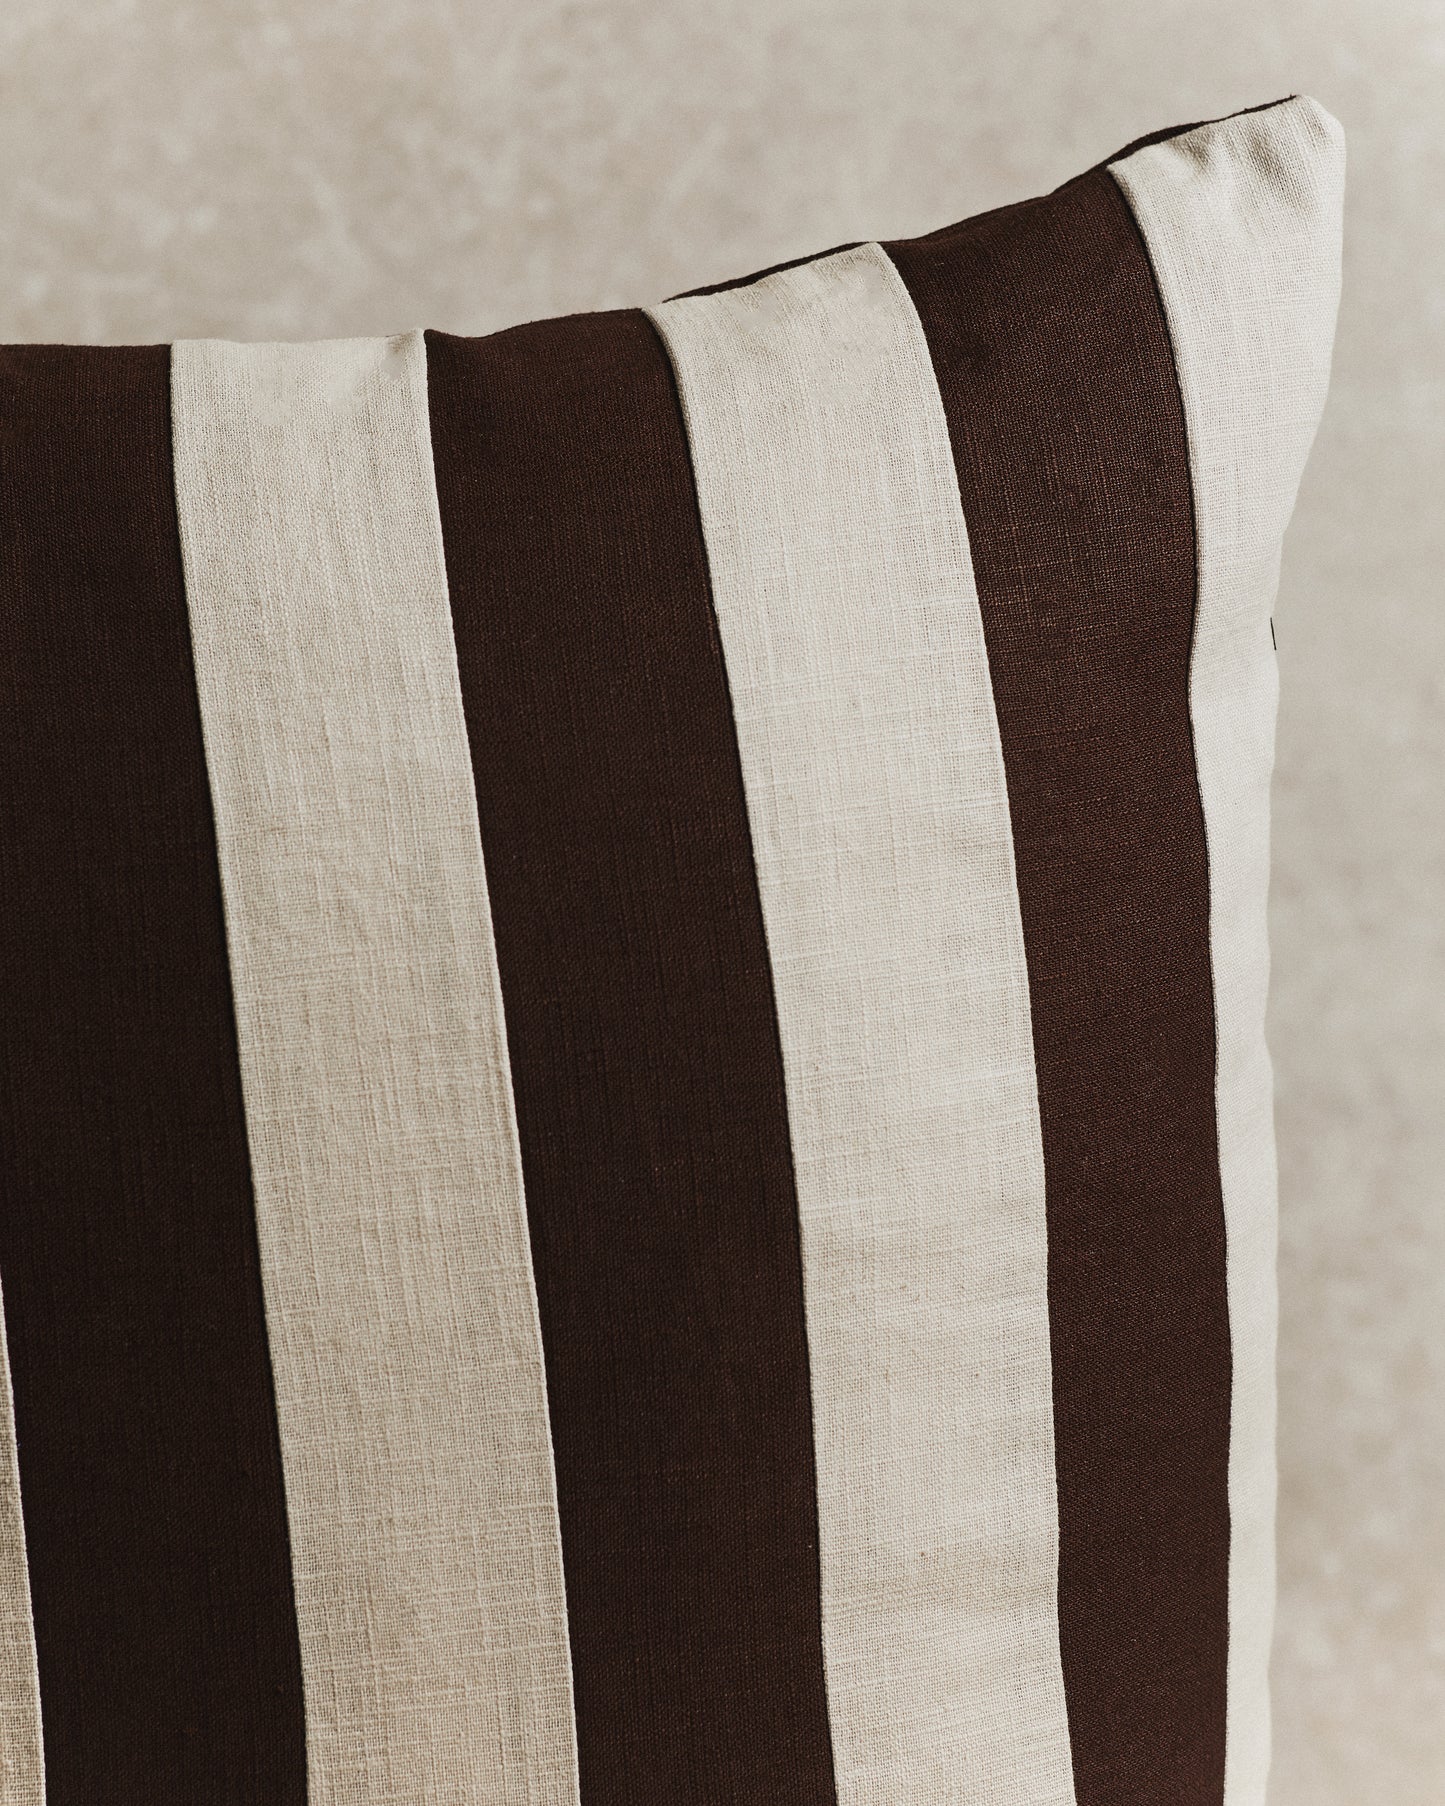 Mini Stripe Cushion Cover | Espresso and Ecru